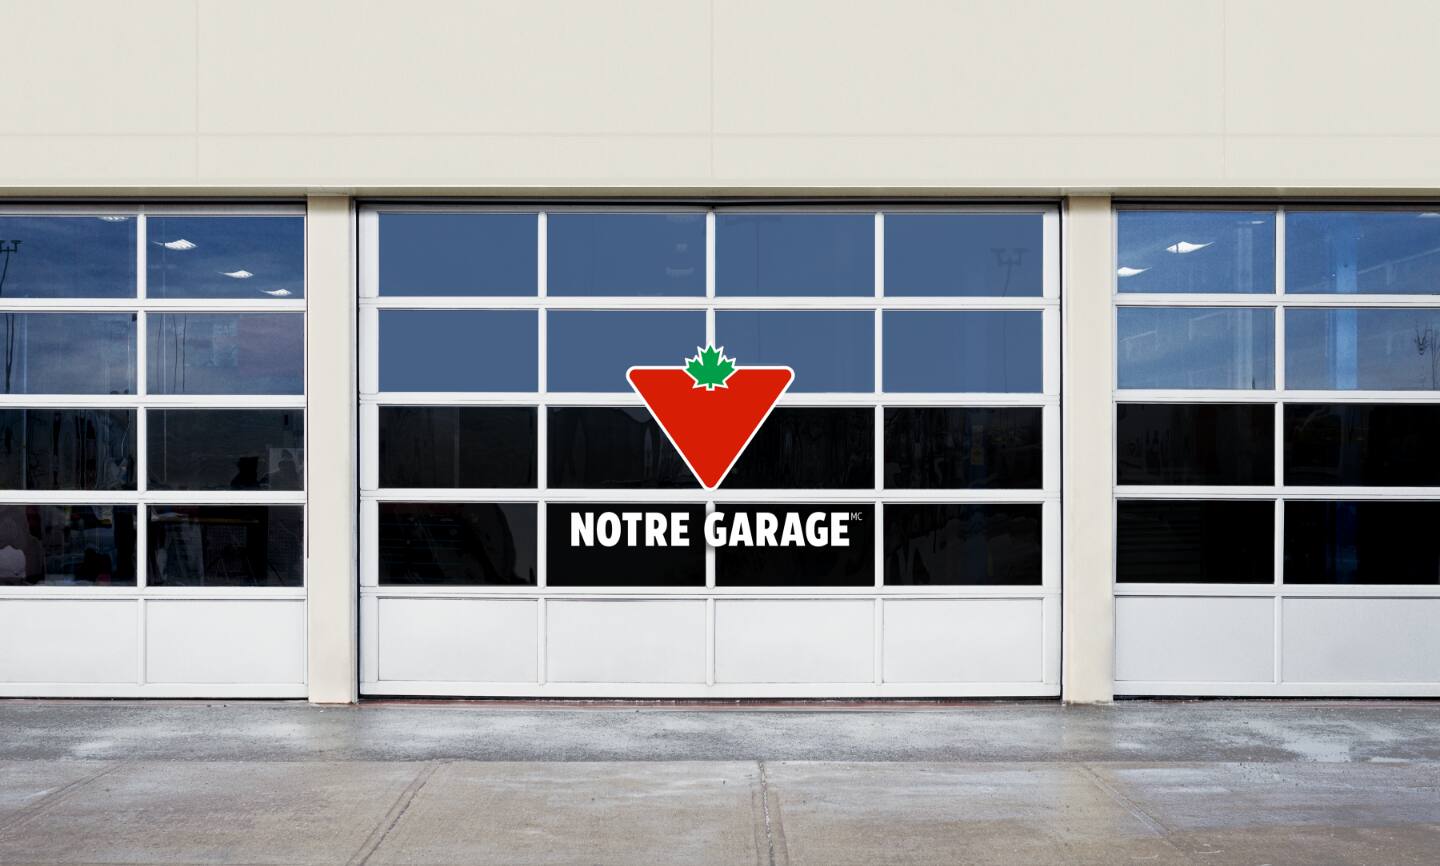 Notre garage.